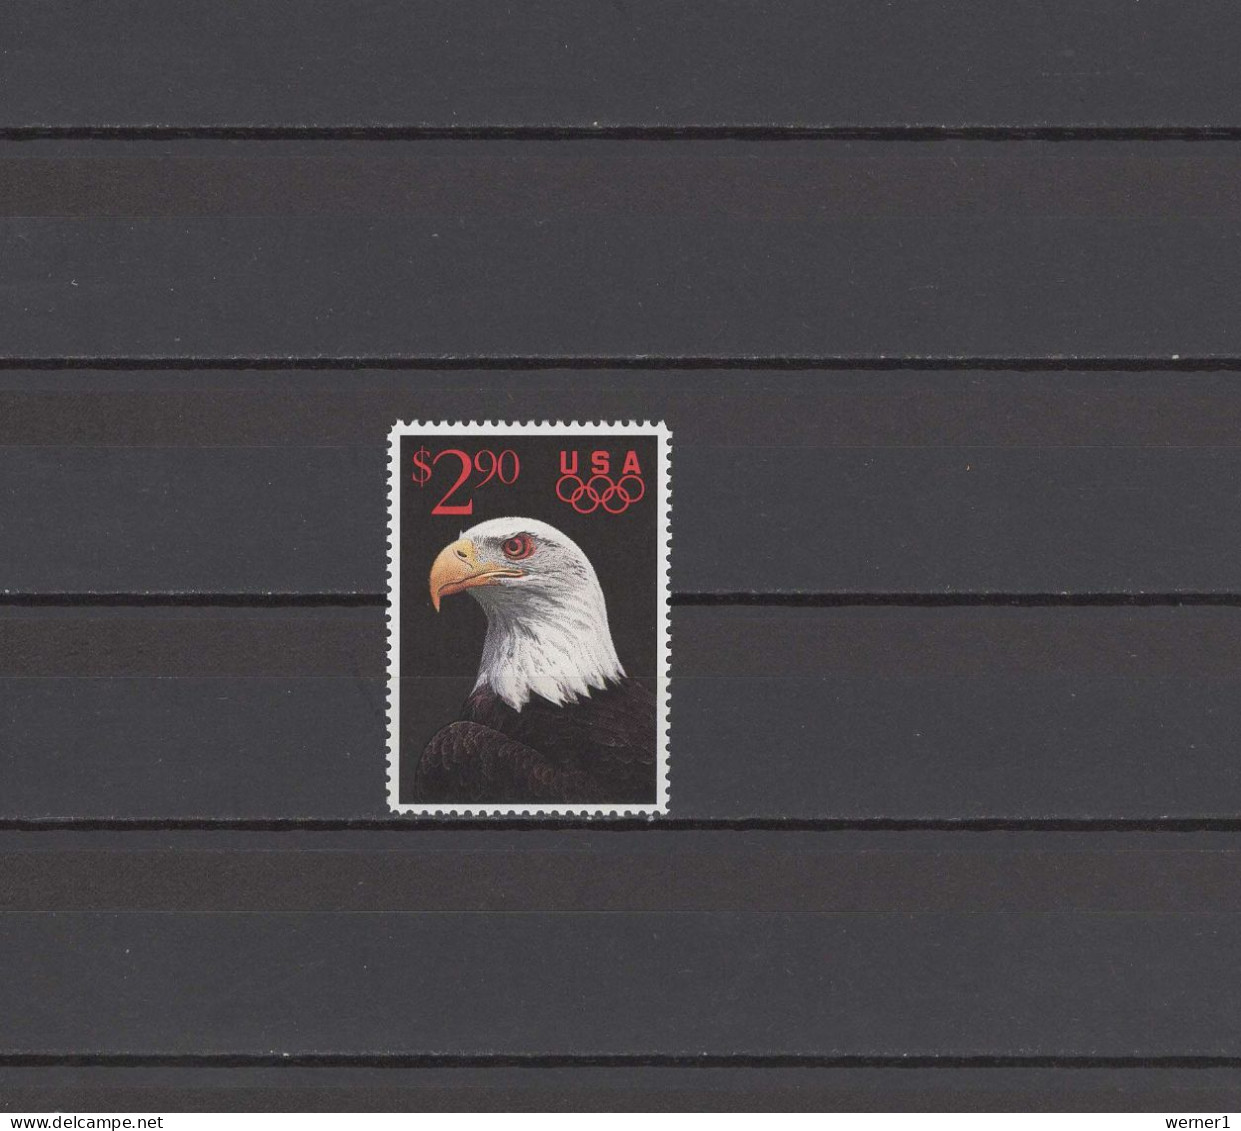 USA 1991 Olympic Games, Eagle 2.90$ Stamp MNH - Verano 1992: Barcelona